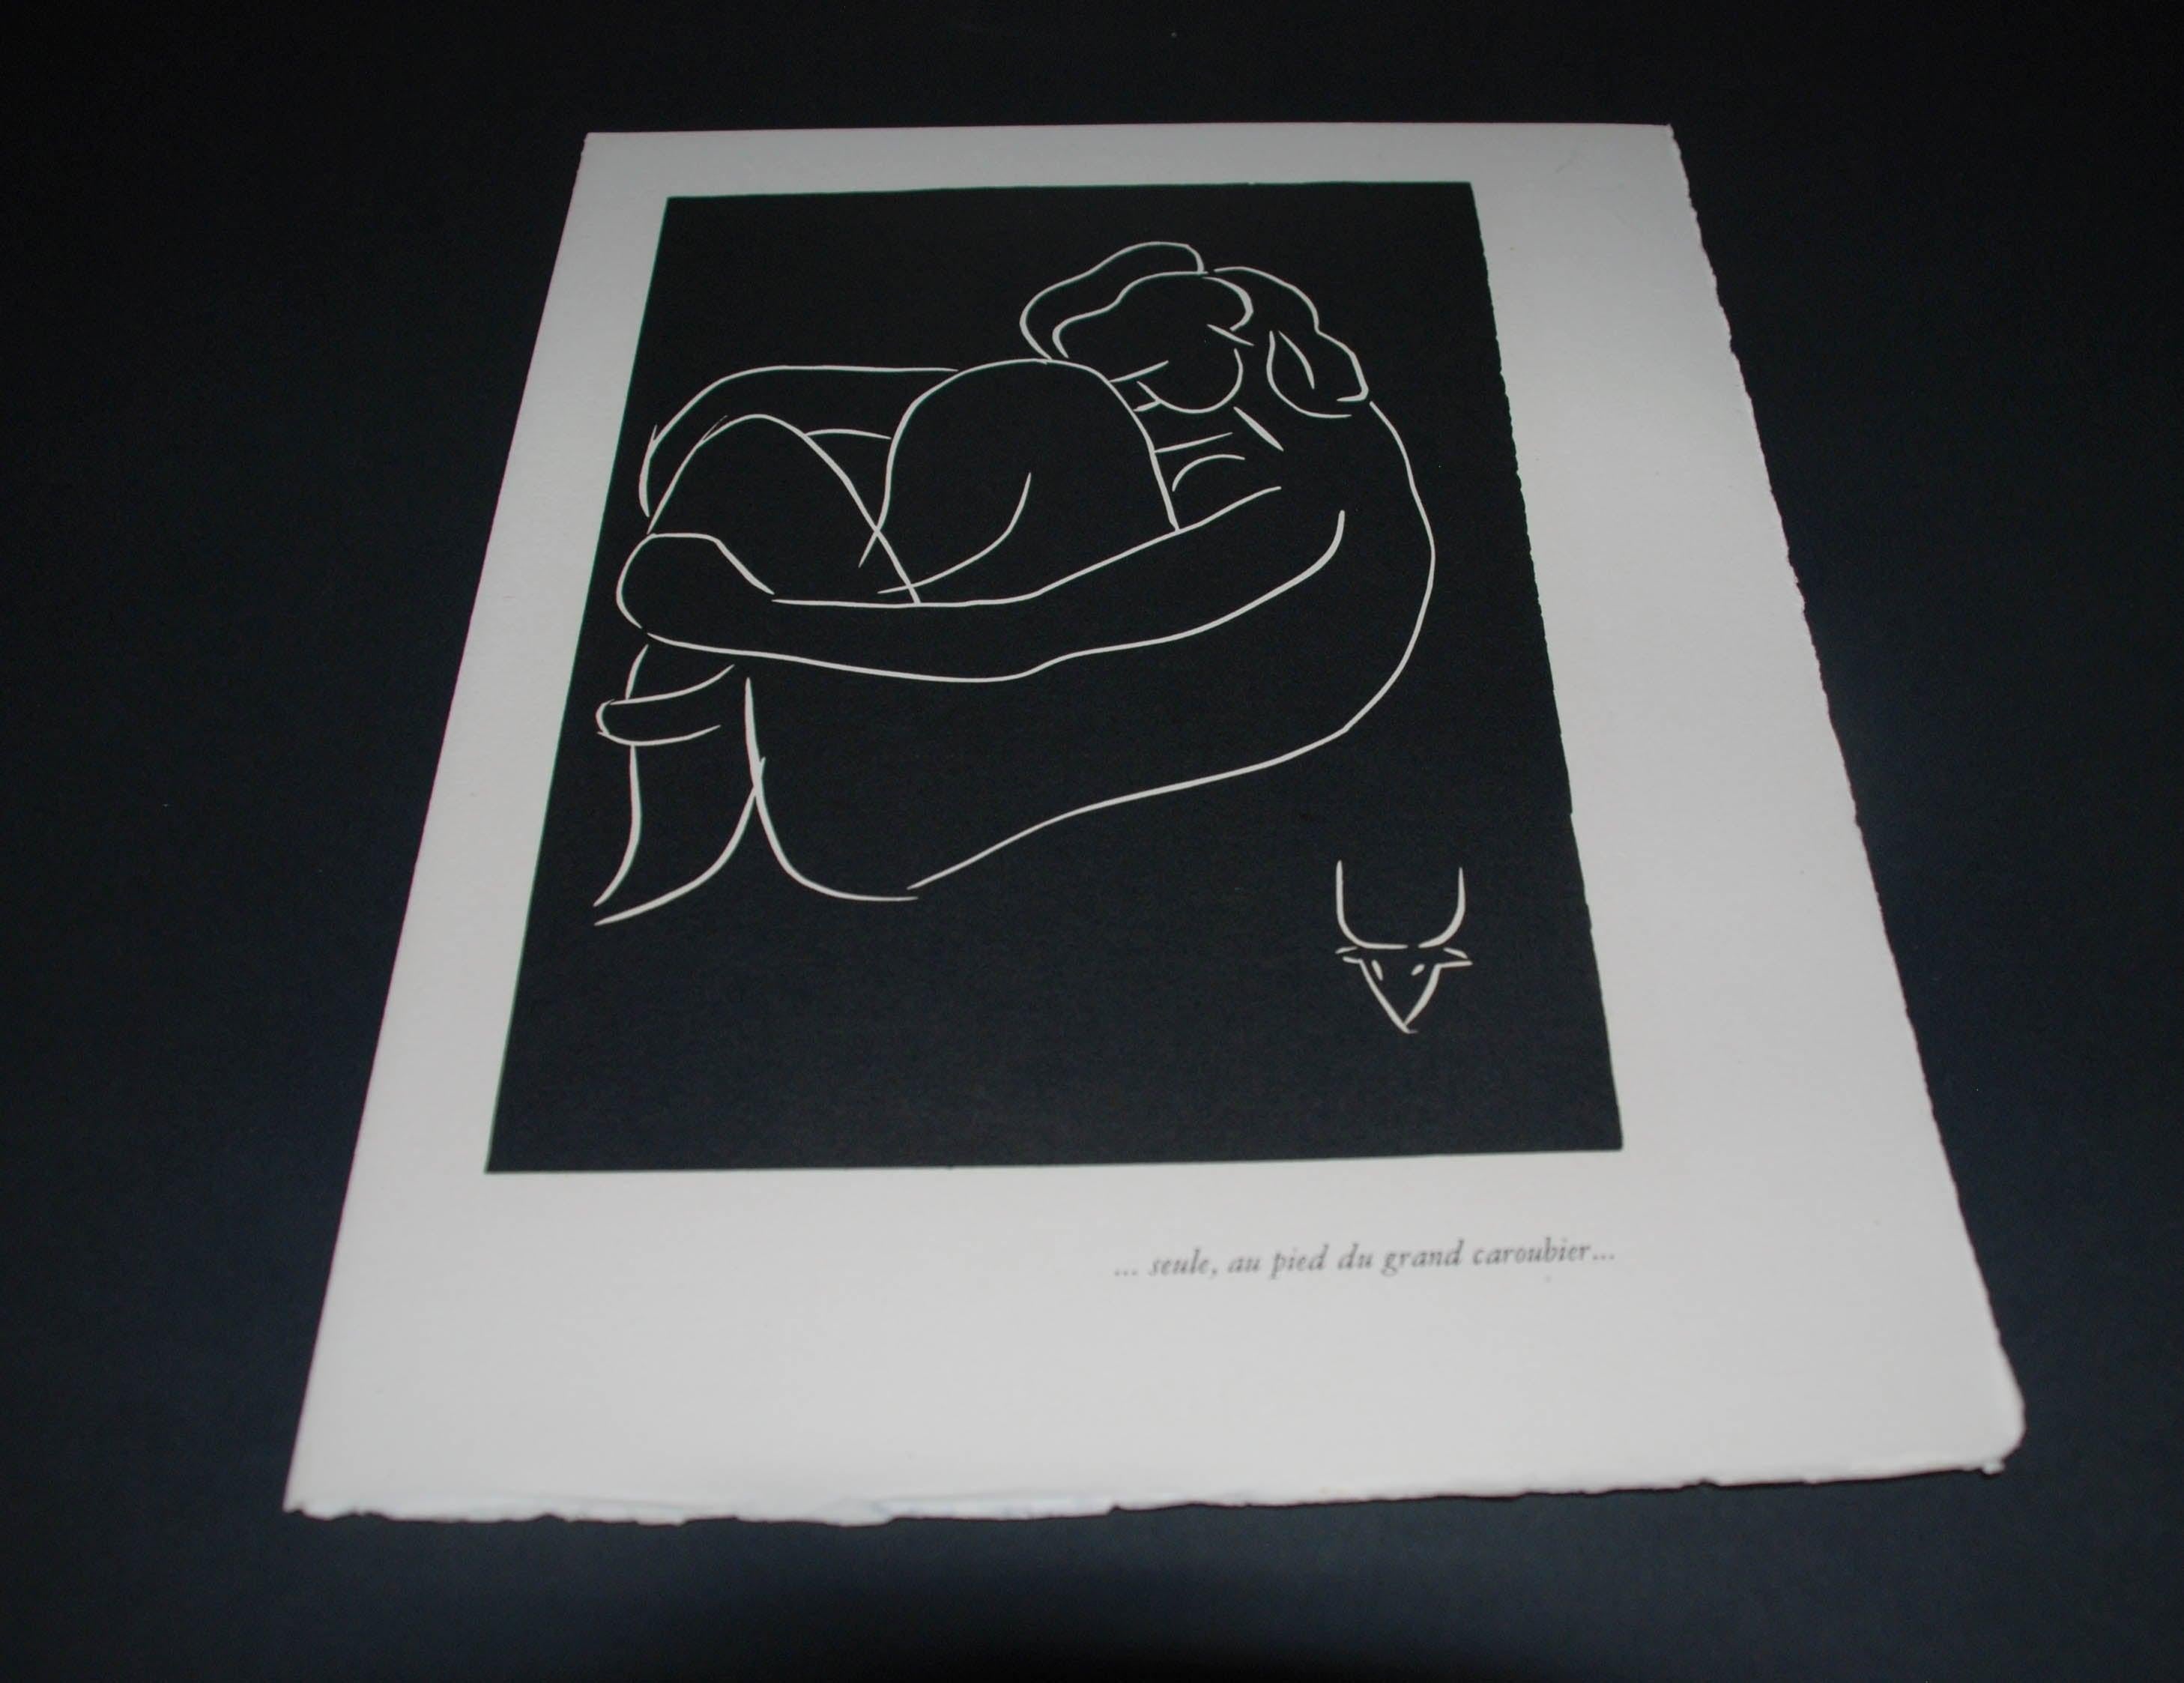 Pasiphae Plate 12: Seule, au pied du grand caroubier - Print by Henri Matisse